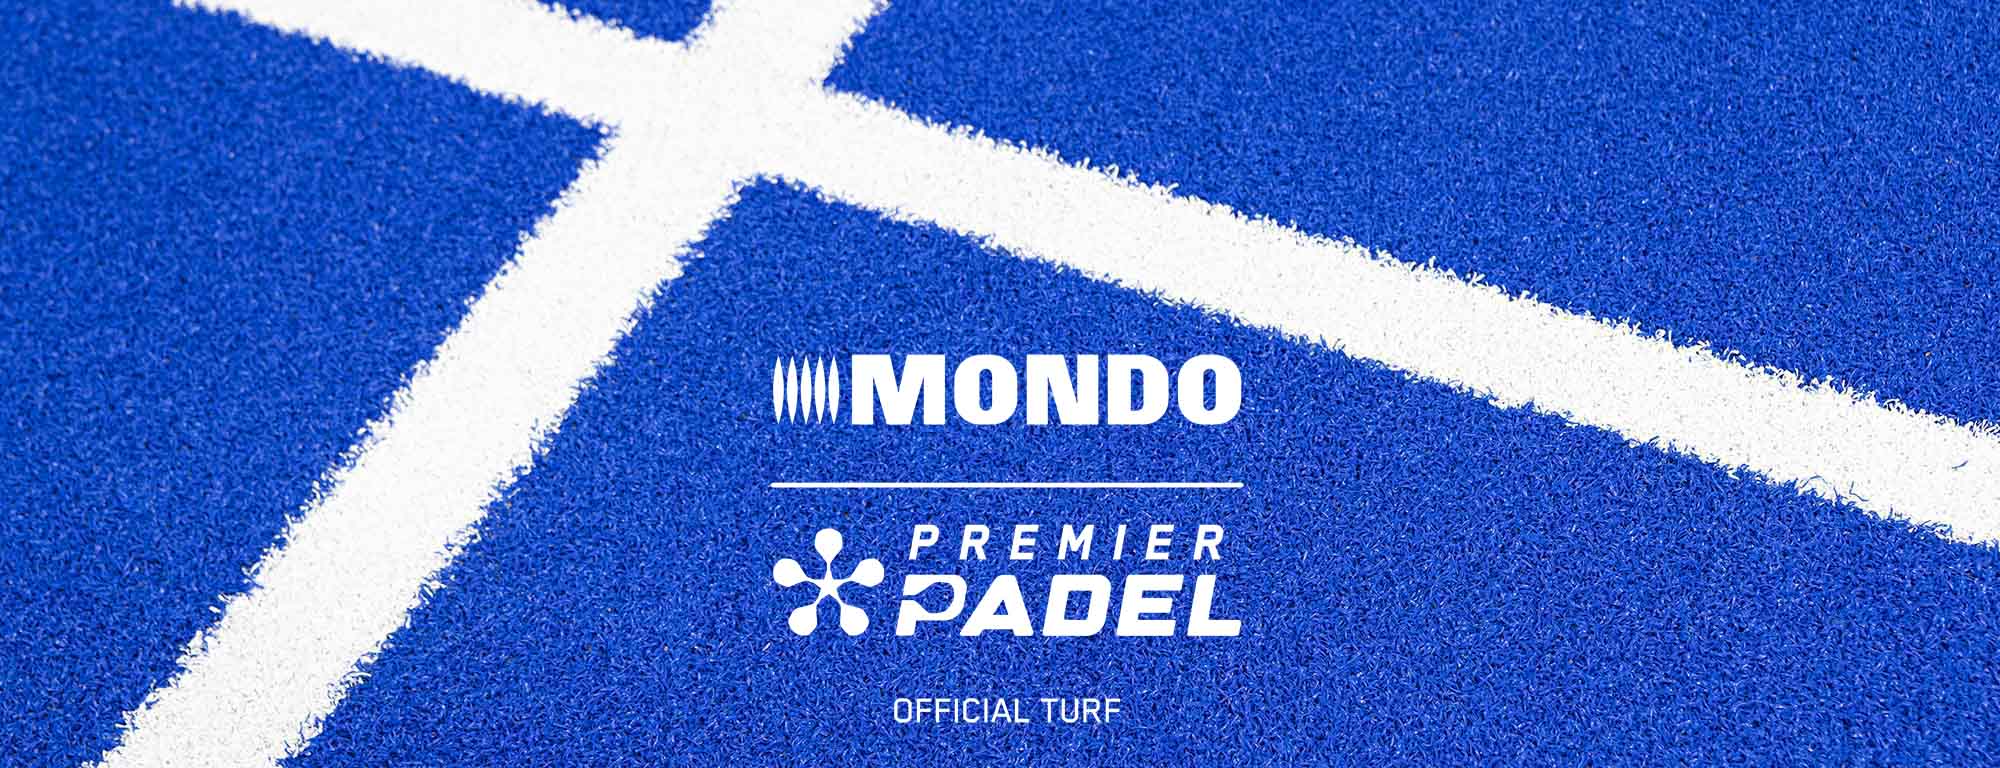 Mondo ya trabaja en un nuevo pavimento de madera exclusivo para fútbol sala  – Mondo Ibérica – News